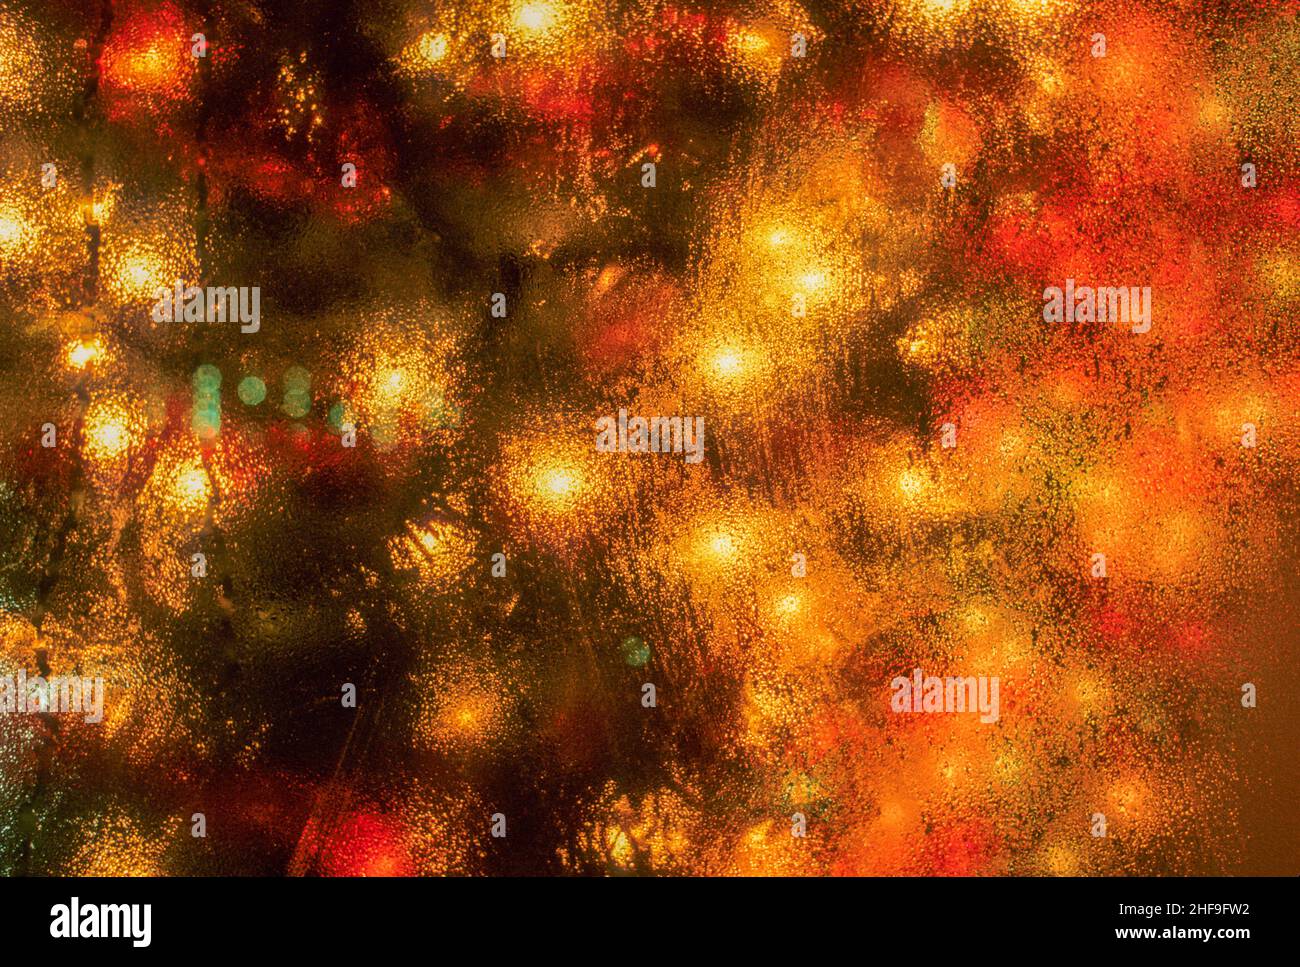 Les lumières d'un arbre de Noël coloré sont diffusées par condensation sur une fenêtre lors d'une nuit d'hiver à Cambridge, ma. Banque D'Images